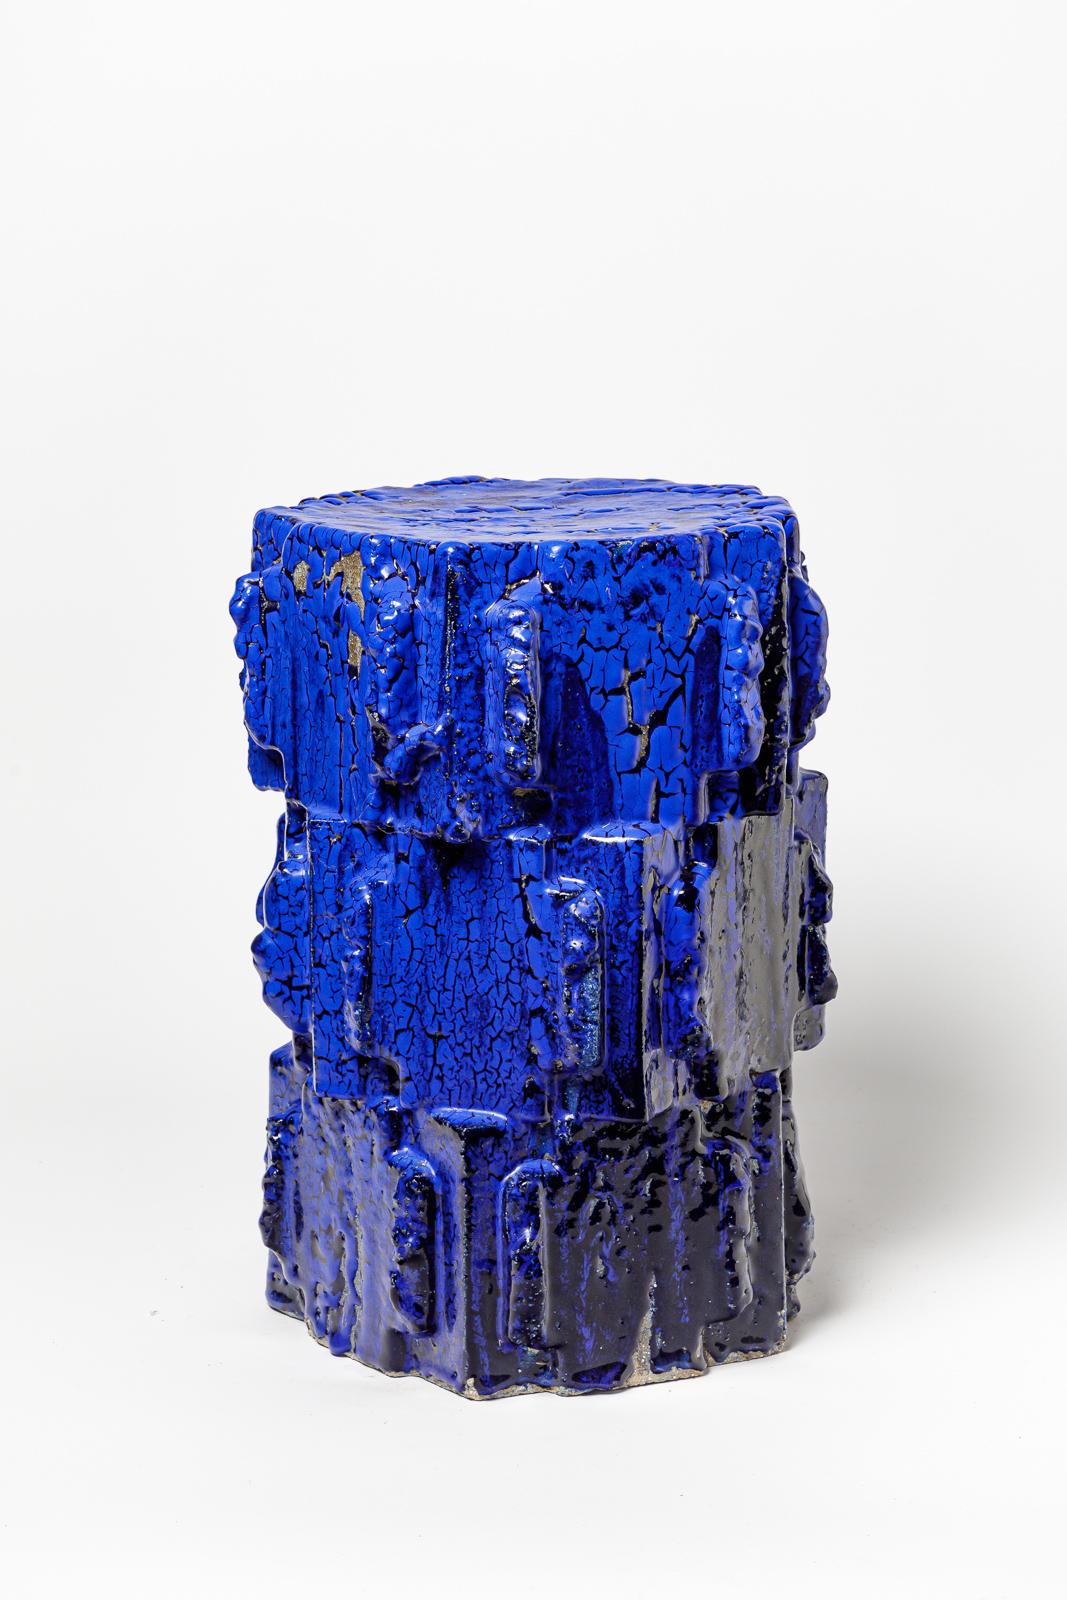 Hocker aus blau glasiertem Bollène-Steinzeug von Jean Ponsart.
Künstlermonogramm am Sockel. 2023.
H : 17,5' x 11,2' x 11,2 Zoll.